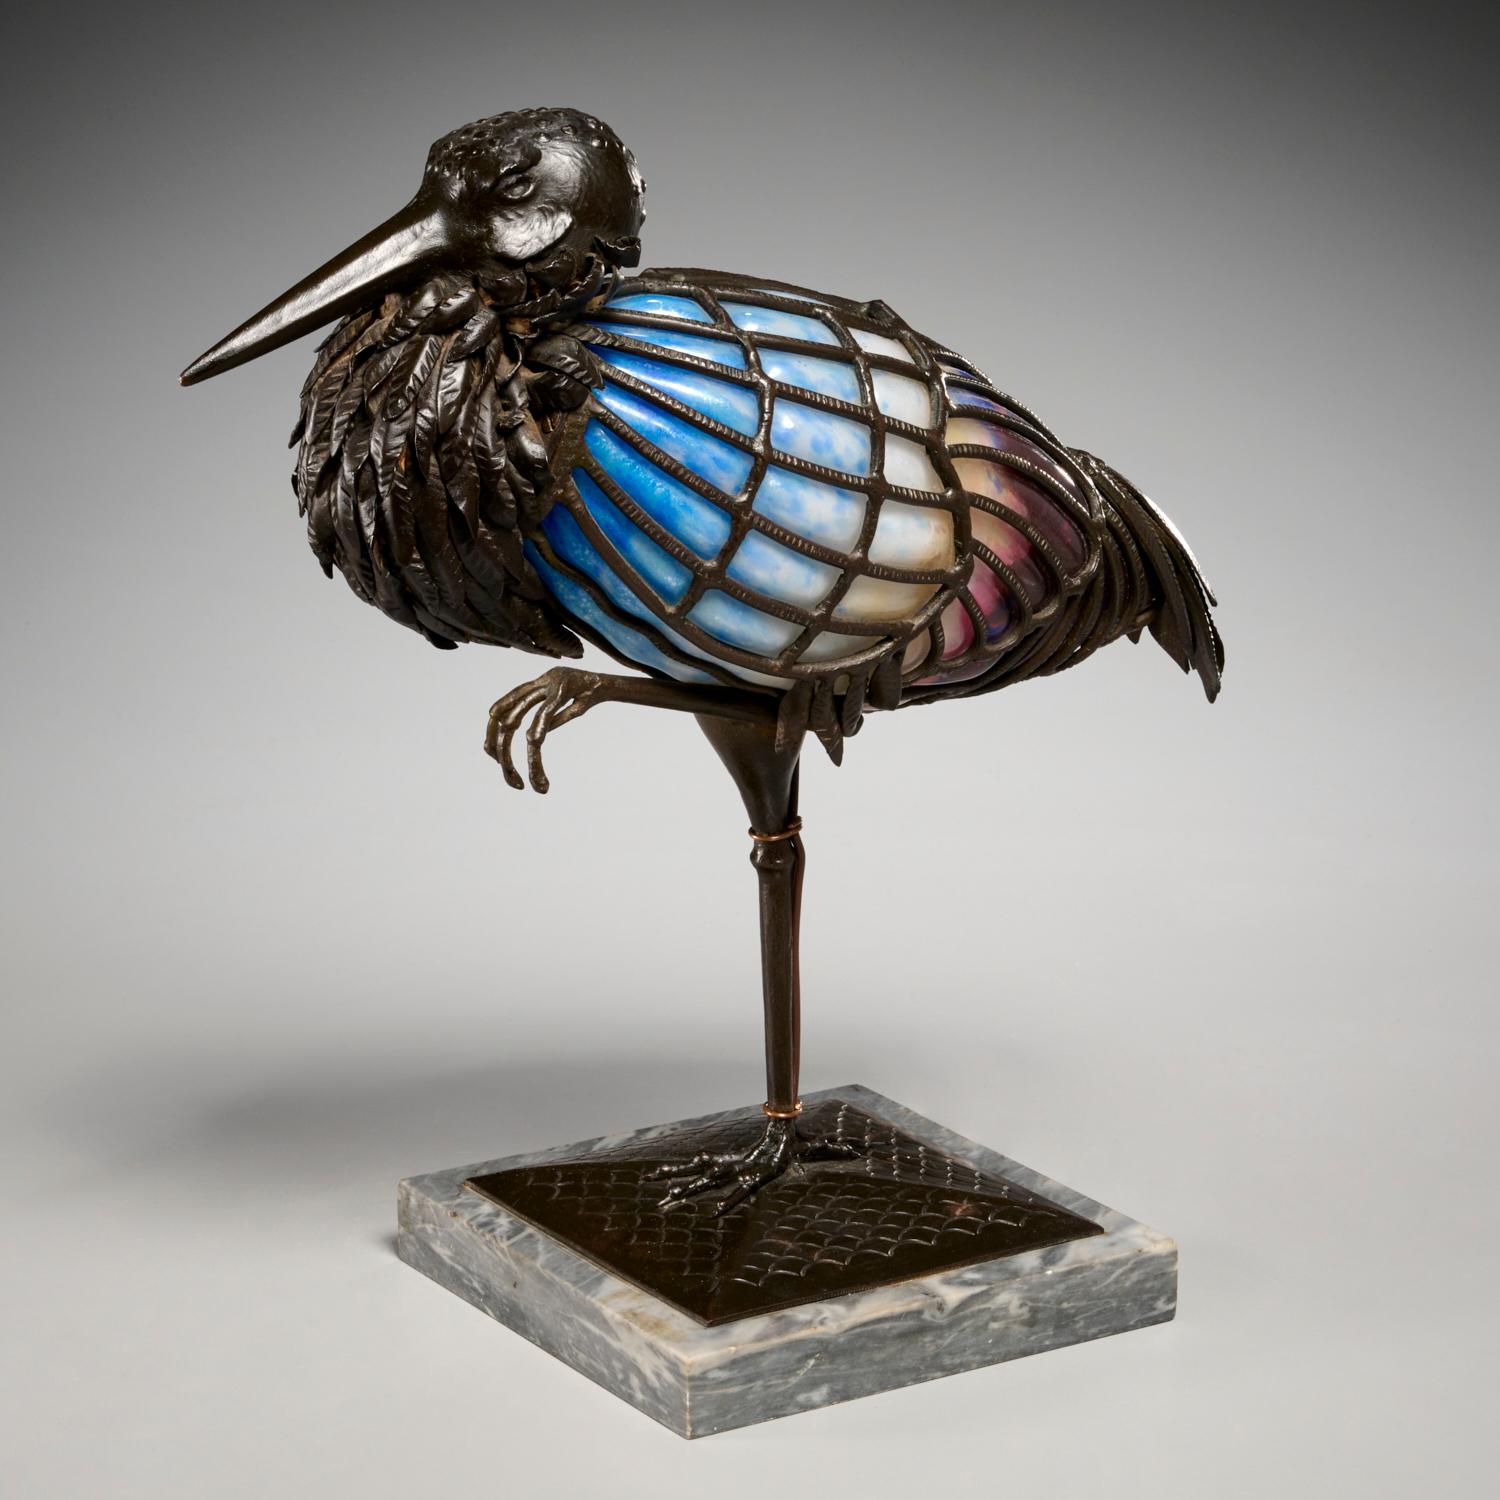 Seltene skulpturale Lampe aus Kunstglas und Schmiedeeisen von Muller-Frères, die einen auf einem Bein stehenden Storchenvogel darstellt. Diese skulpturale Lampe besteht aus einem braun patinierten Schmiedeeisen mit gehämmerter Vogelskulptur und